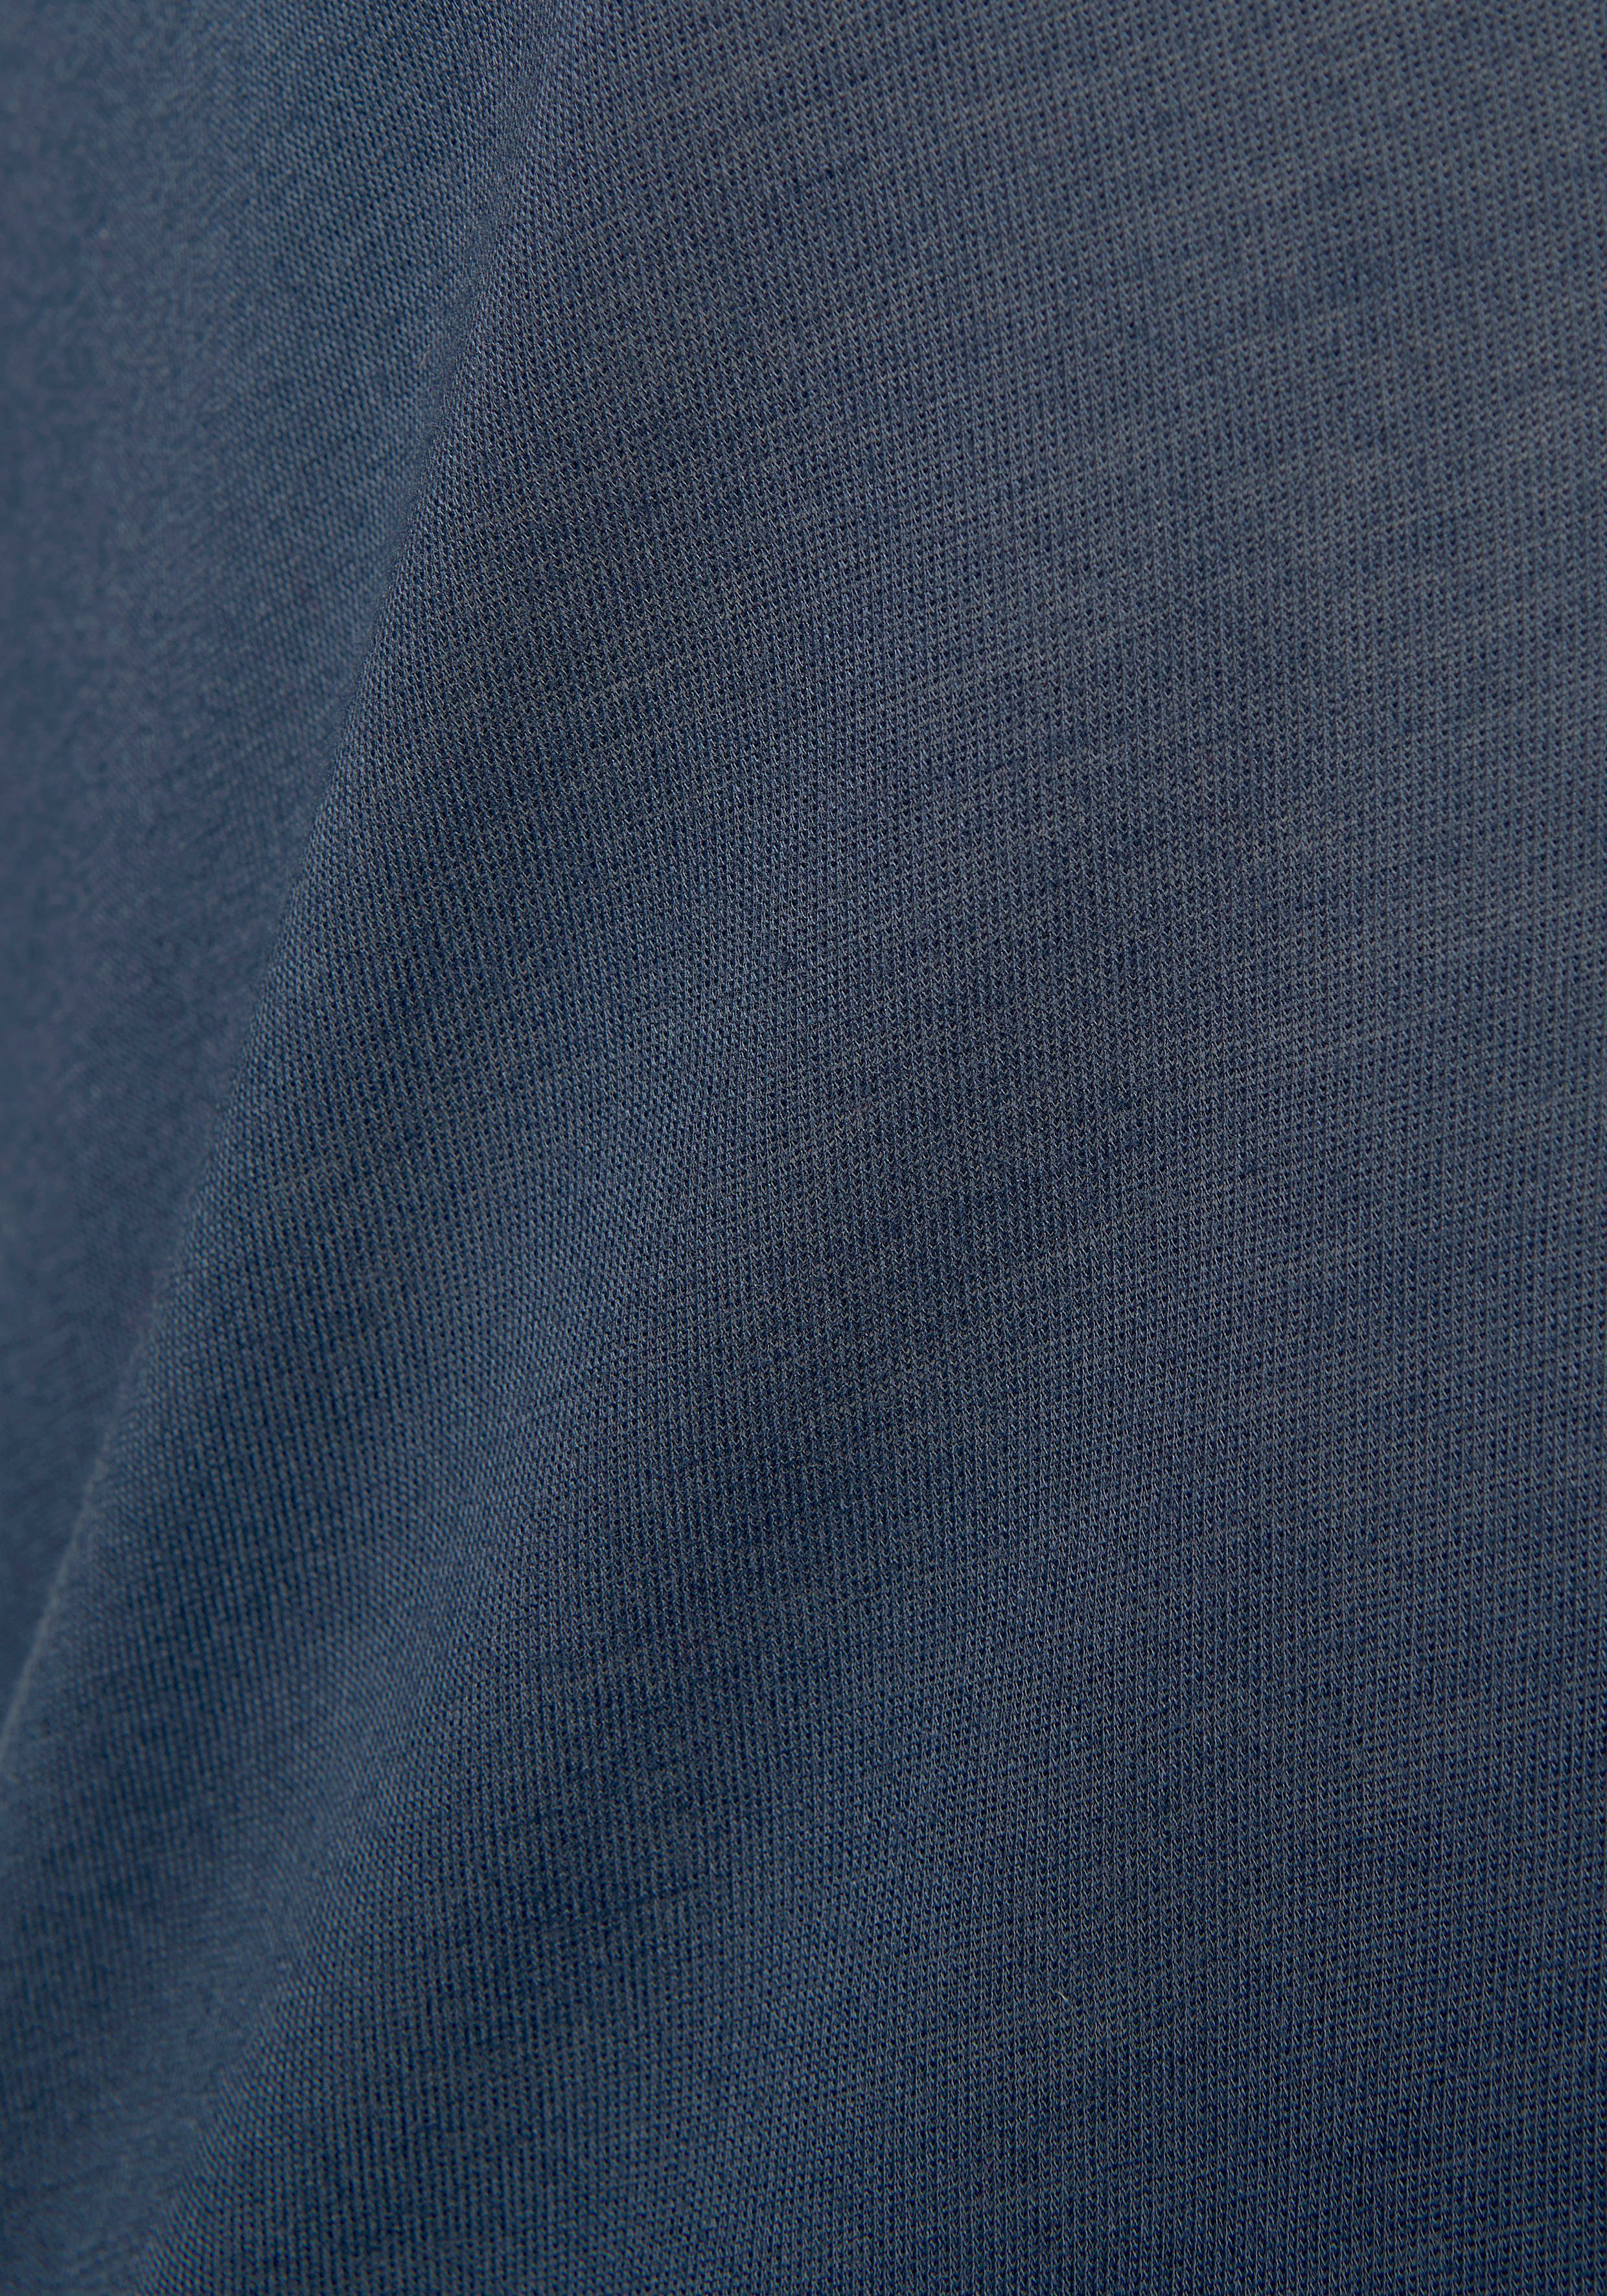 Nachthemd halblangen Ärmeln LASCANA mit nachtblau und Spitzendetail